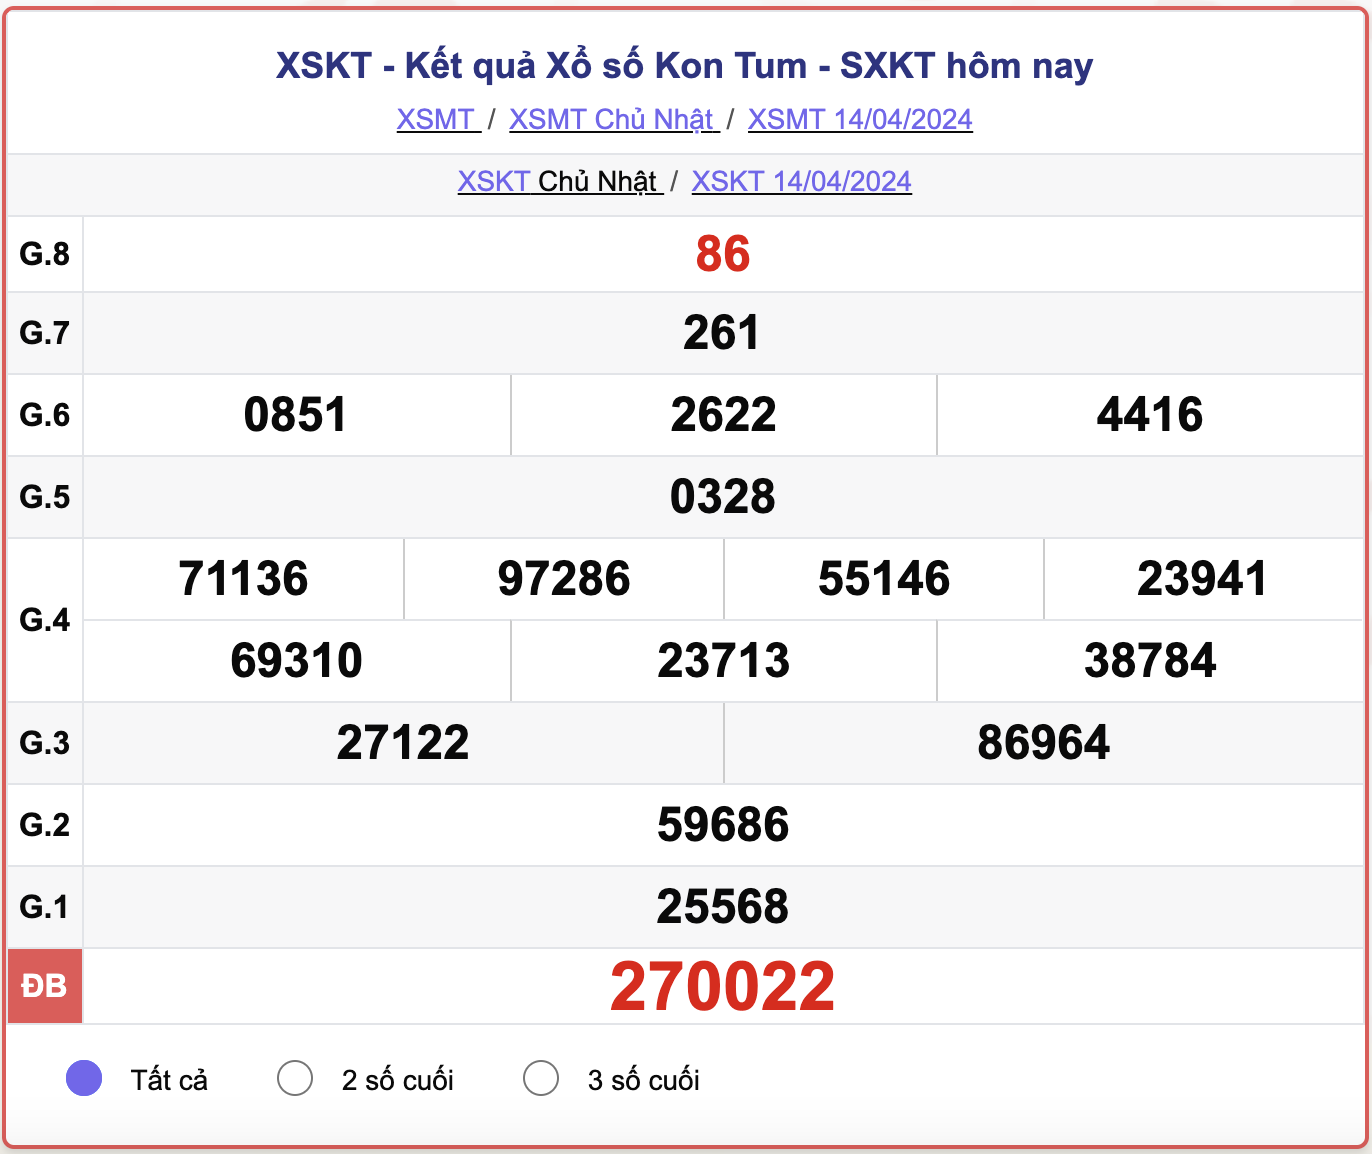 XSKT Chủ nhật, kết quả xổ số Kon Tum ngày 14/4/2024.